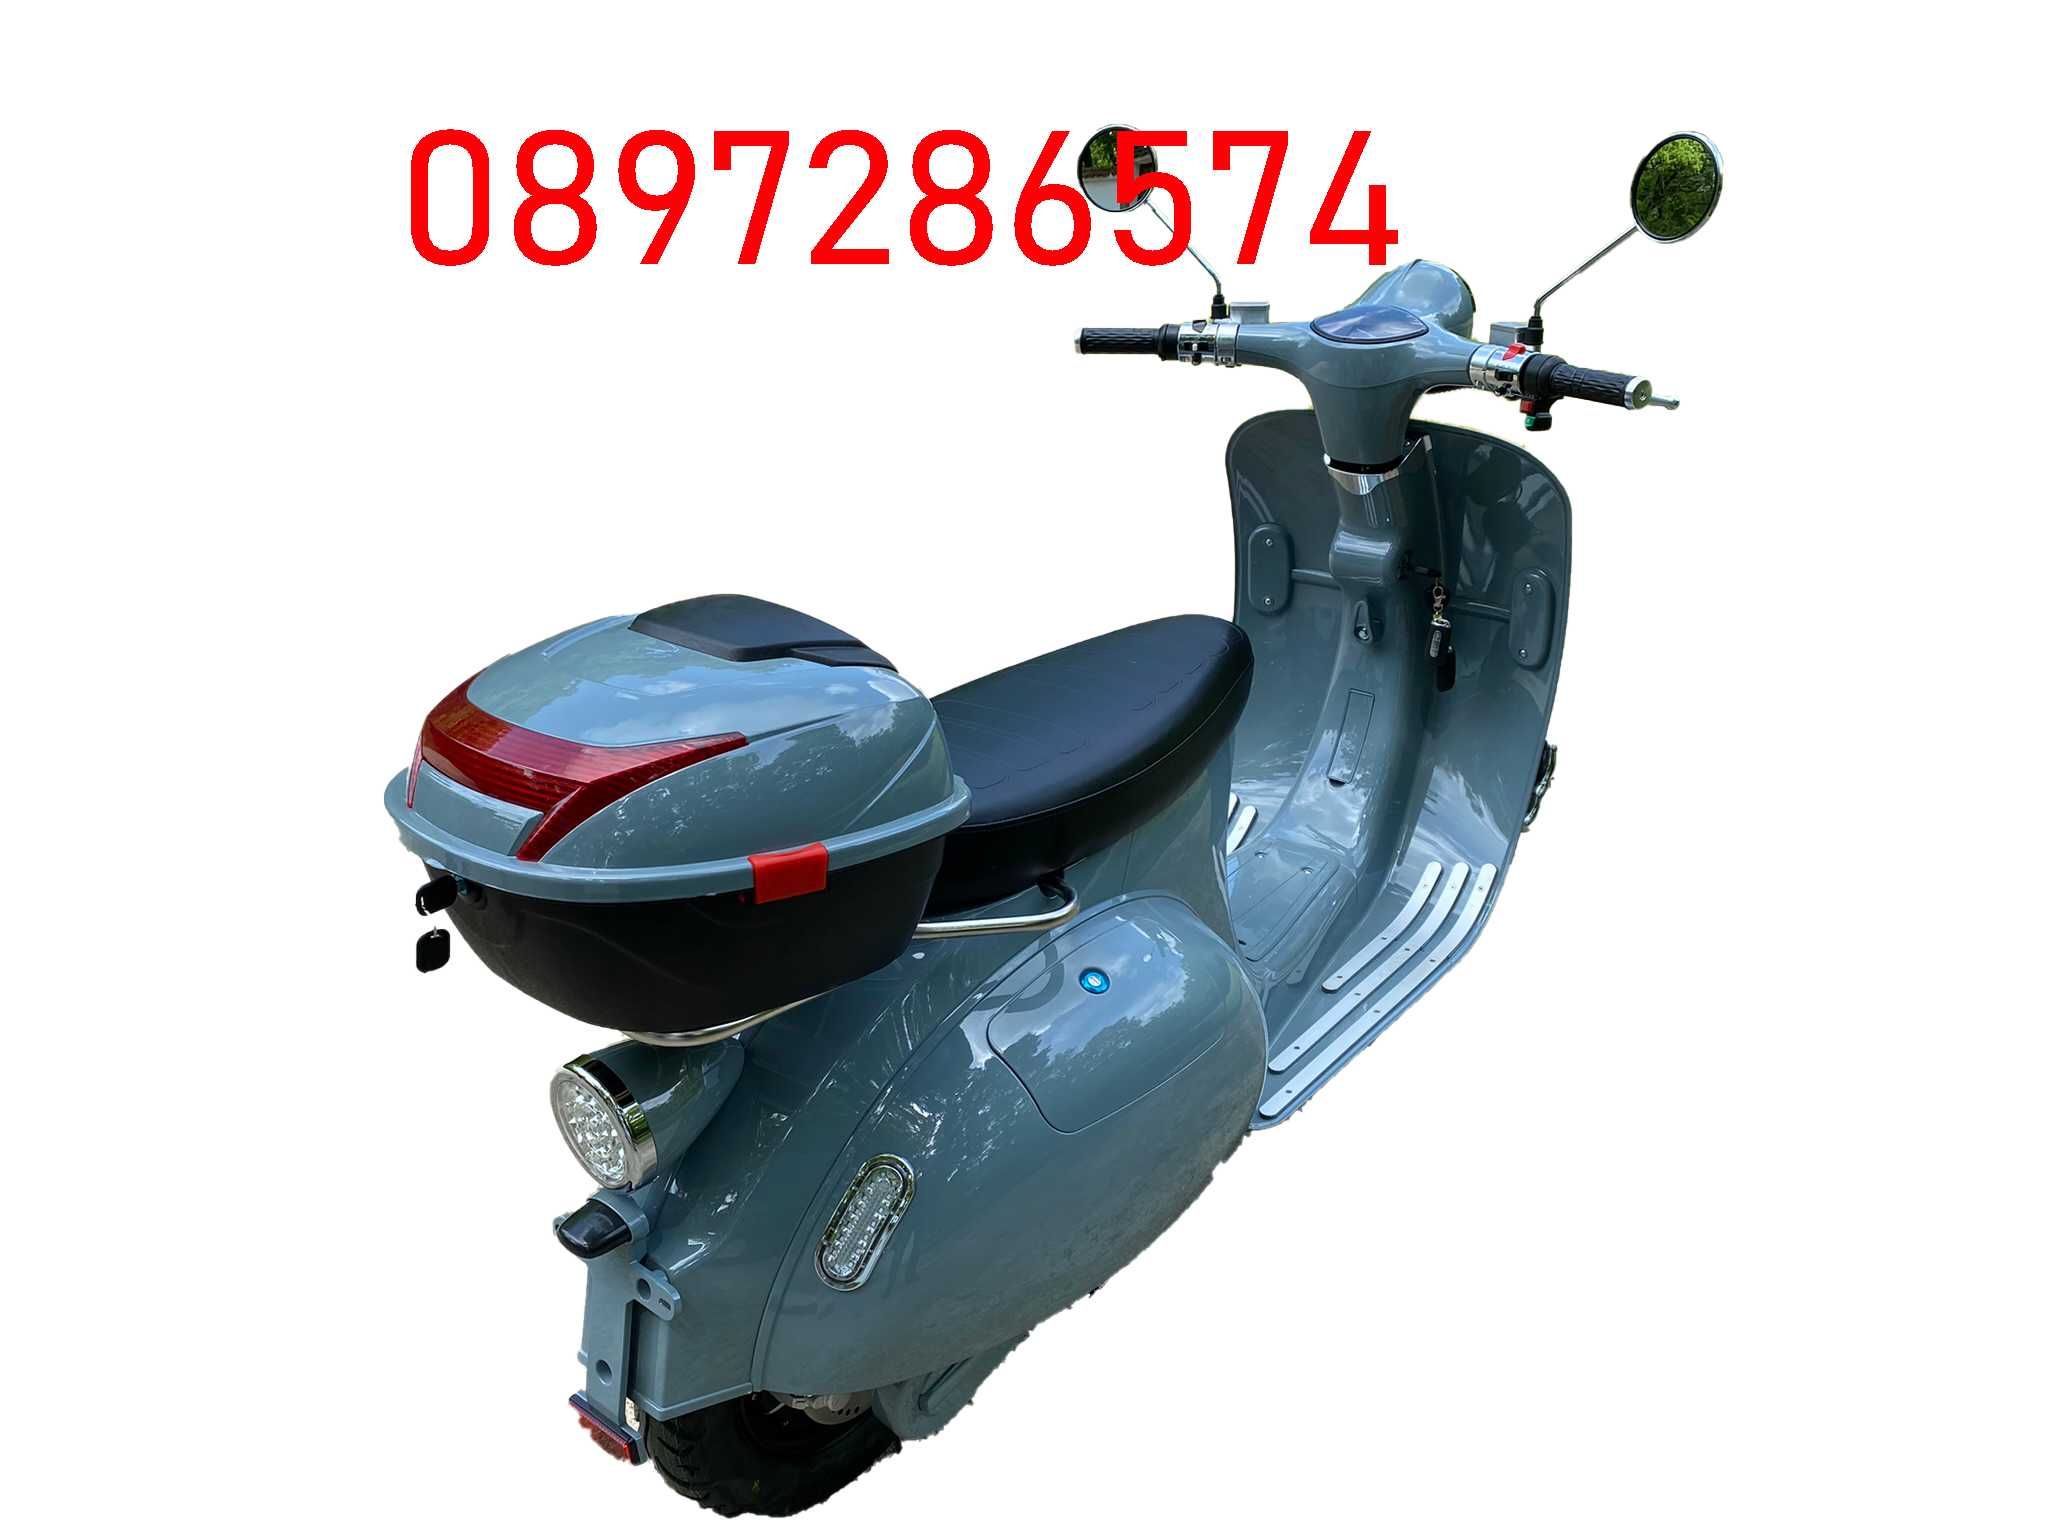 ПРОМОЦИЯ - Електрически скутер с регистрация тип“ VESPA “4000W